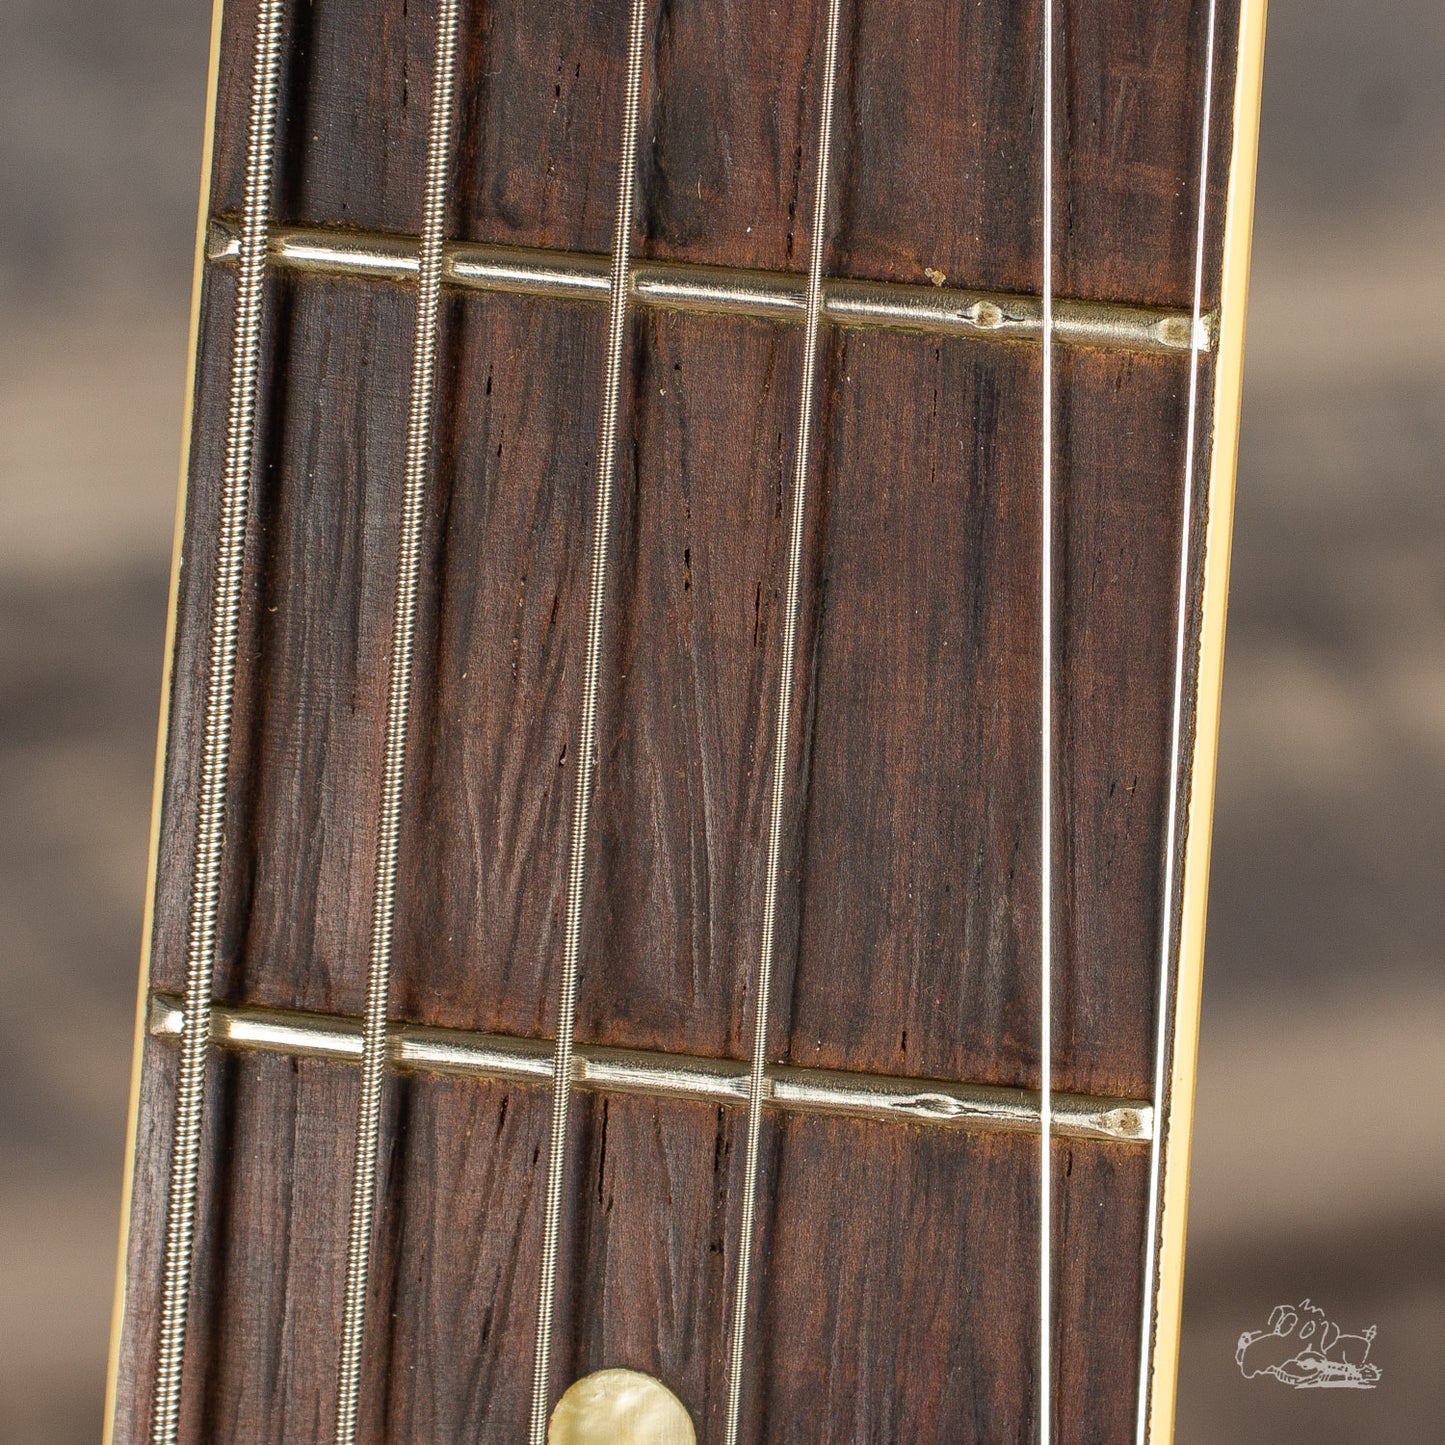 1958 Gibson ES-225T